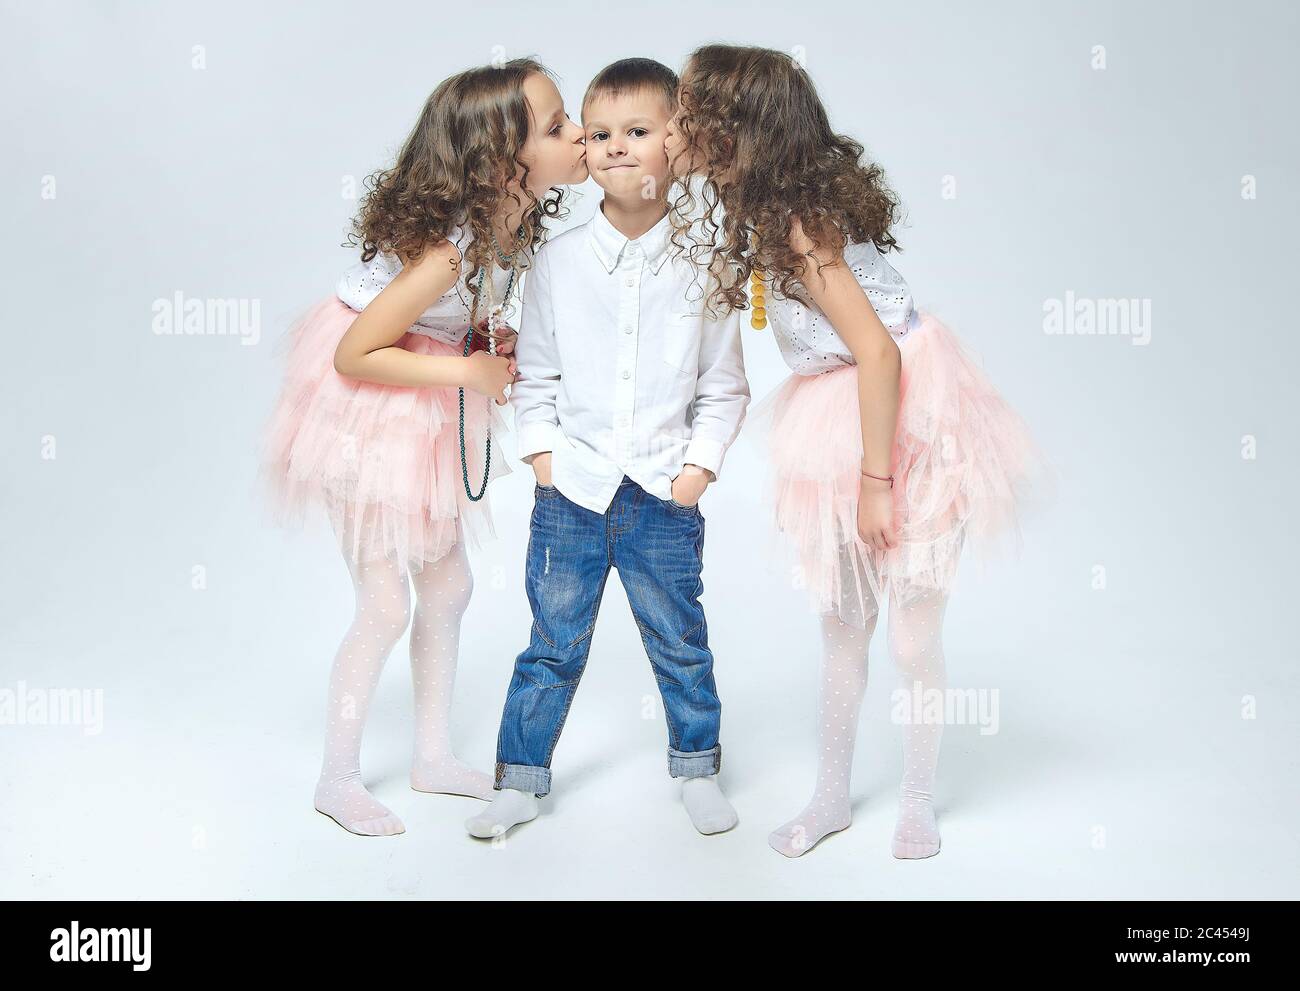 Zwei kleine Mädchen küssen einen Jungen. Schöne Foto-Session im Studio, Weiß zurück Stockfoto